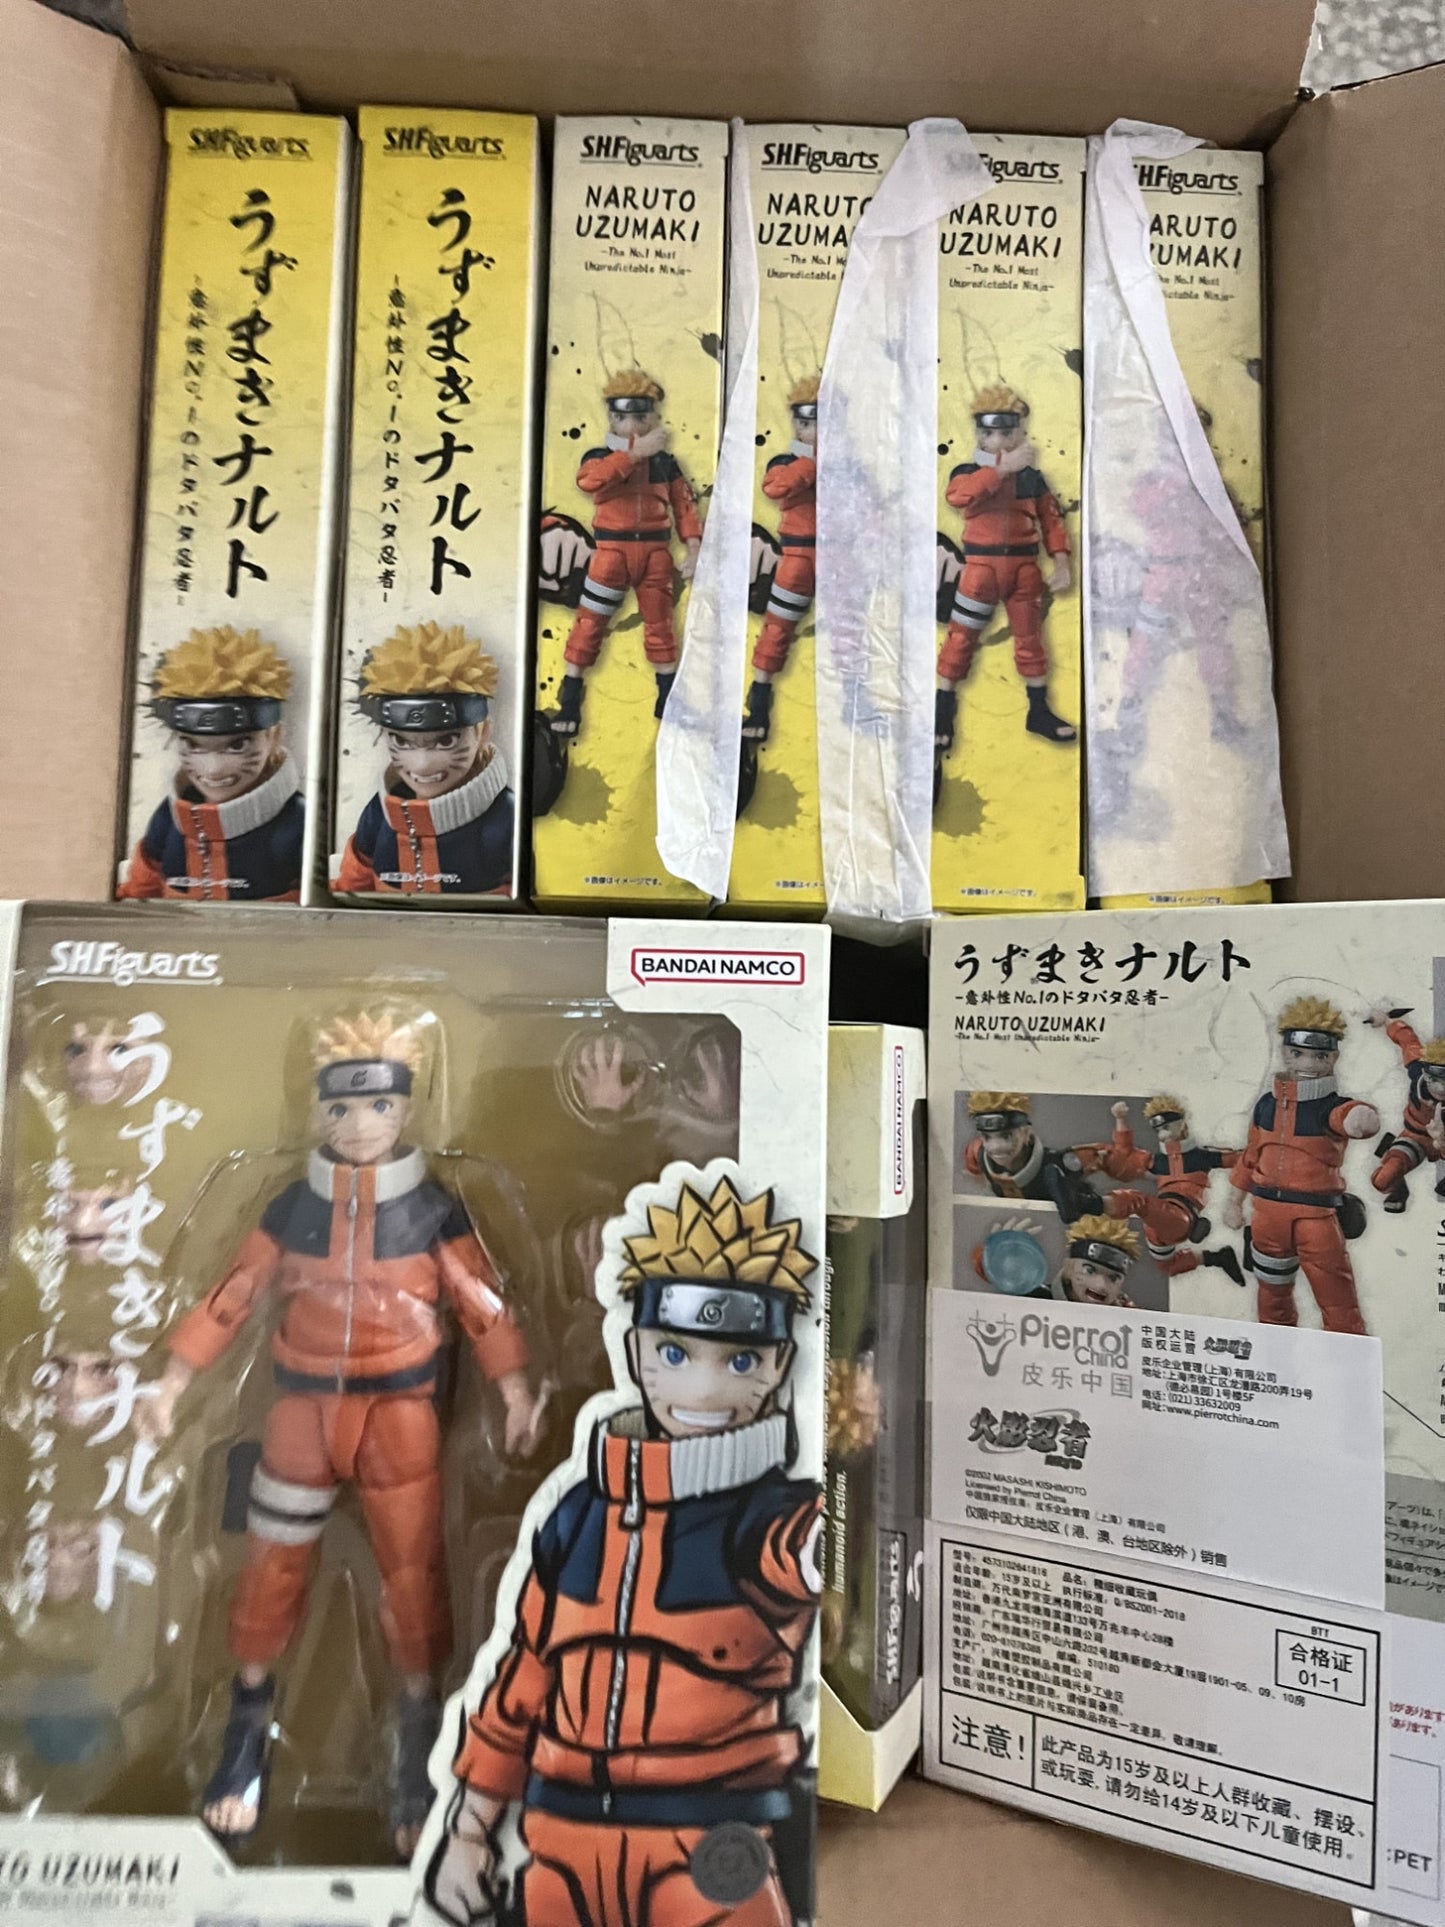 Bandai SHFiguarts 2.0 Jiraiya Kakashi Hatake No 1 Naruto Sasuke Sakura Uchiha Madara SHF Anime Figure Action Model Toy